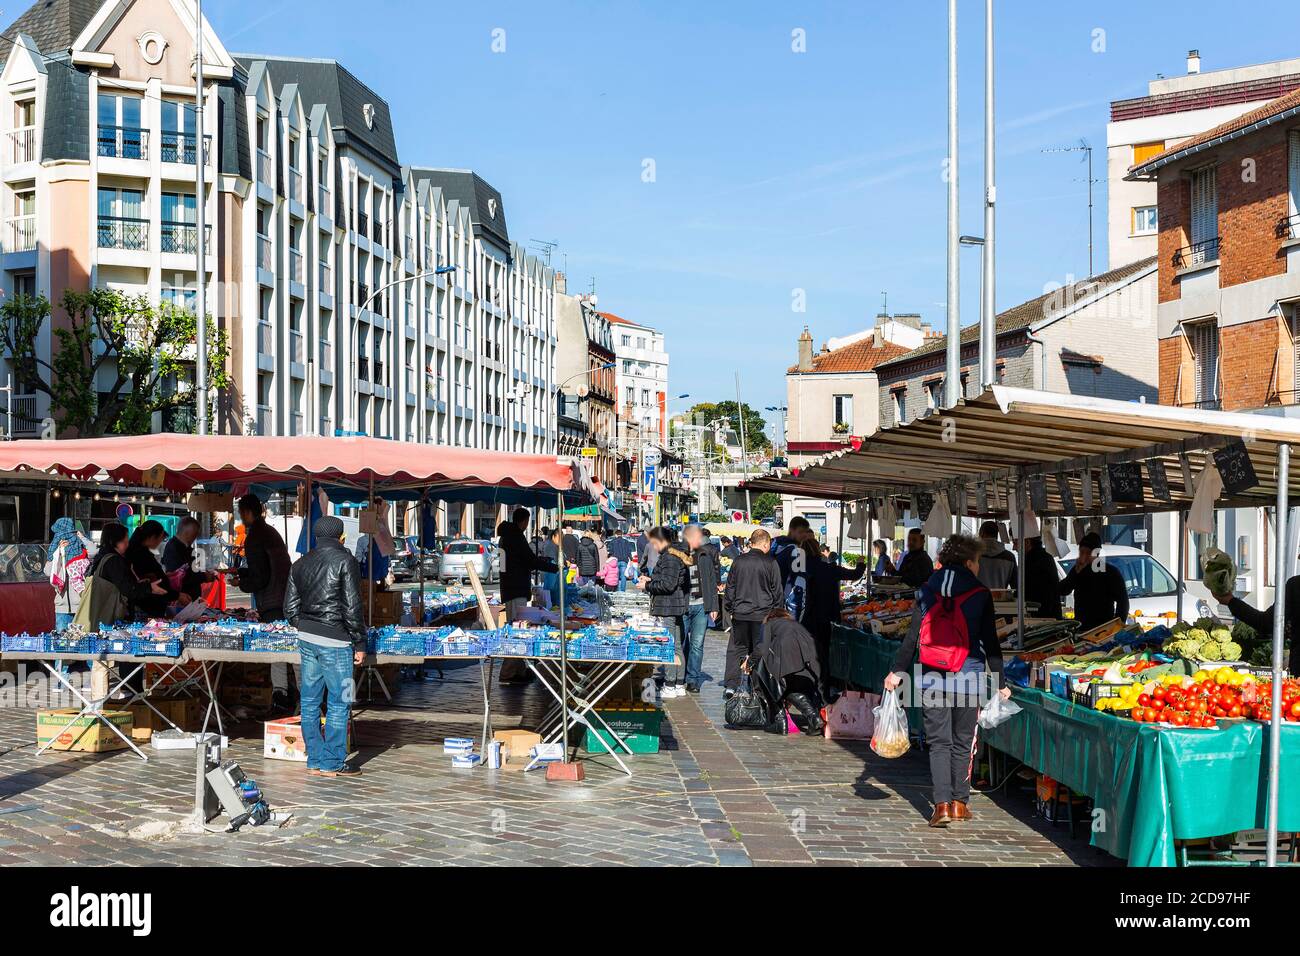 France, Seine Saint Denis, Villemomble, Republic Market Stock Photo